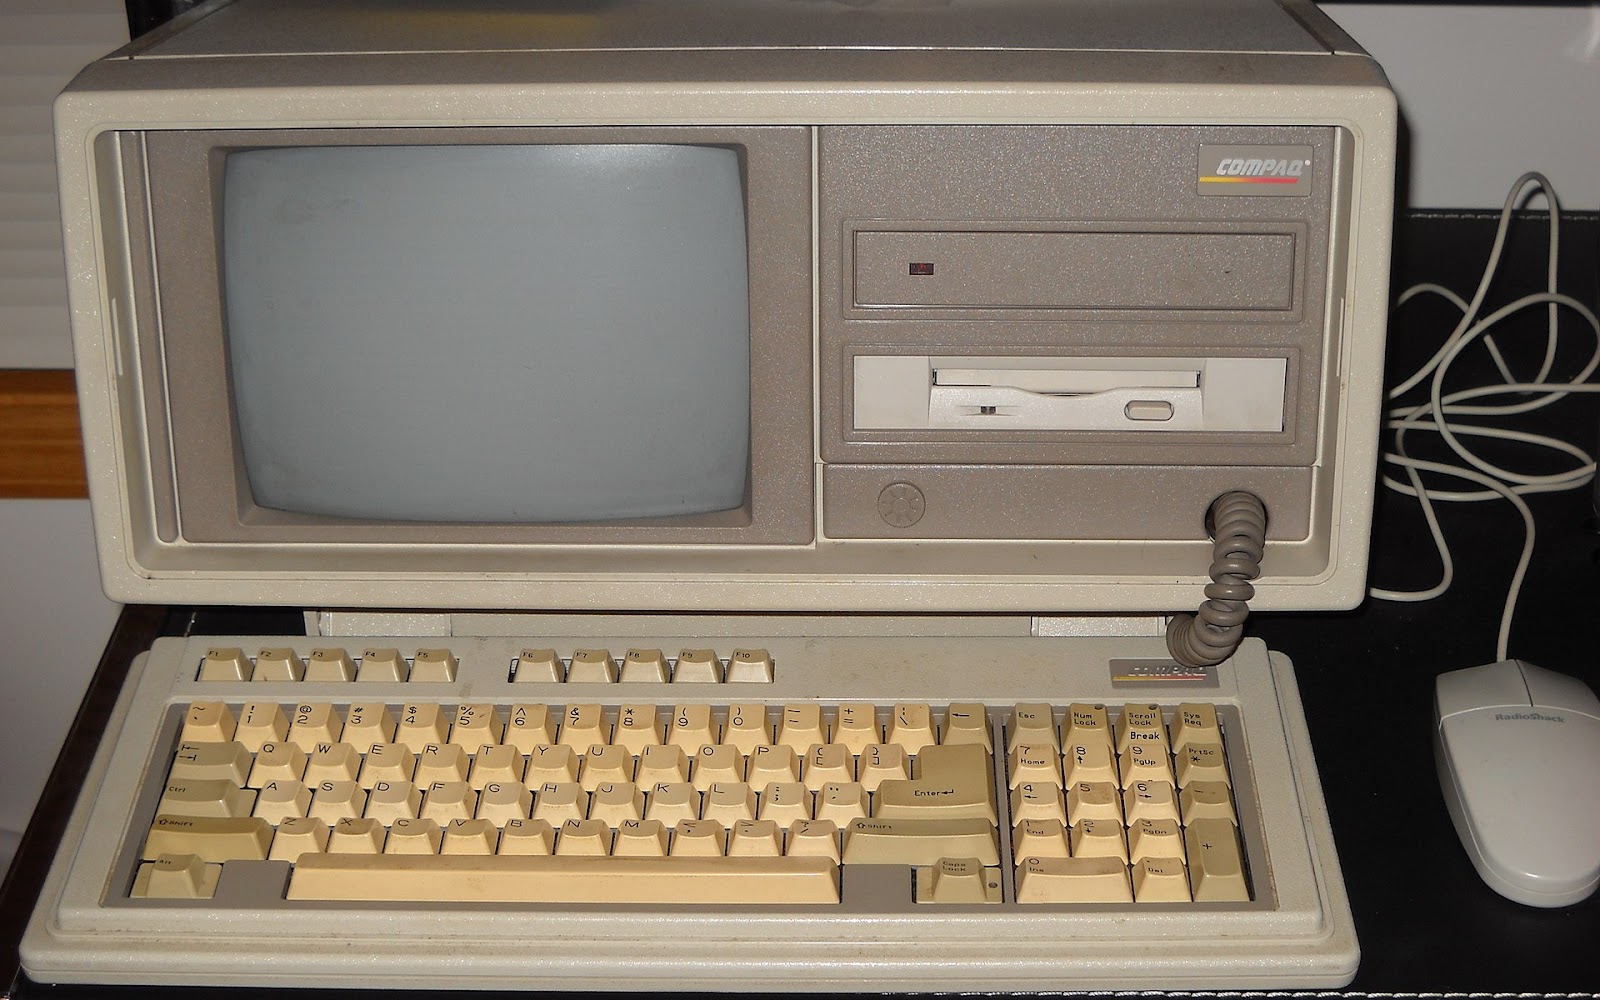 Compaq Portable II Computer, источник Wikipedia. Дисковод 3,5" является более поздним модом, система поставлялась только с 5,25" вариантом.